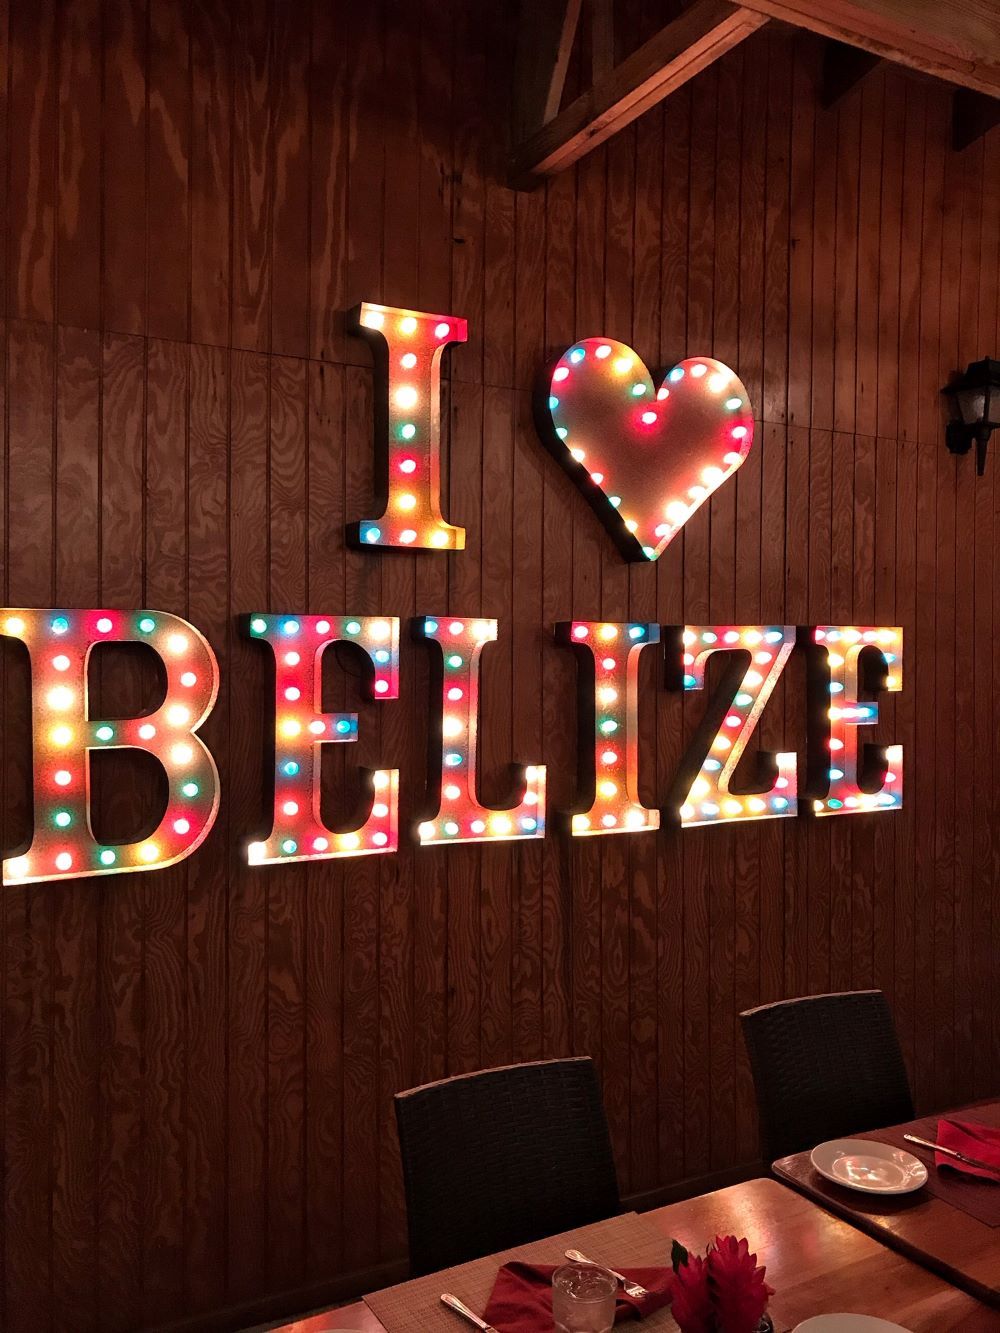 I love Belize Sign